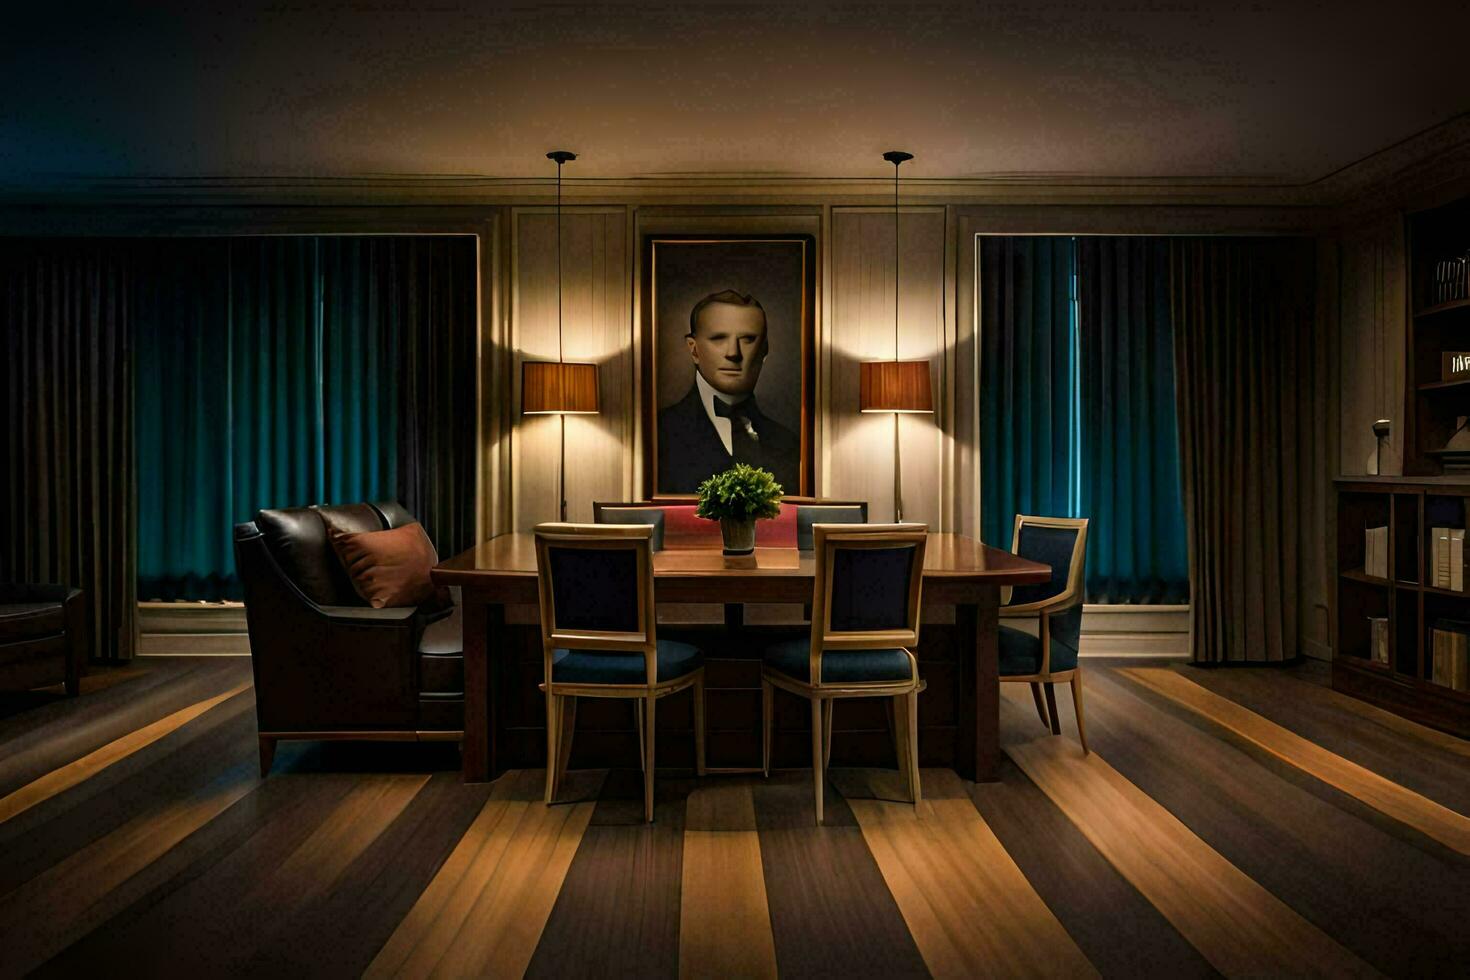 uma jantar quarto com uma pintura do Presidente pessoa. gerado por IA foto